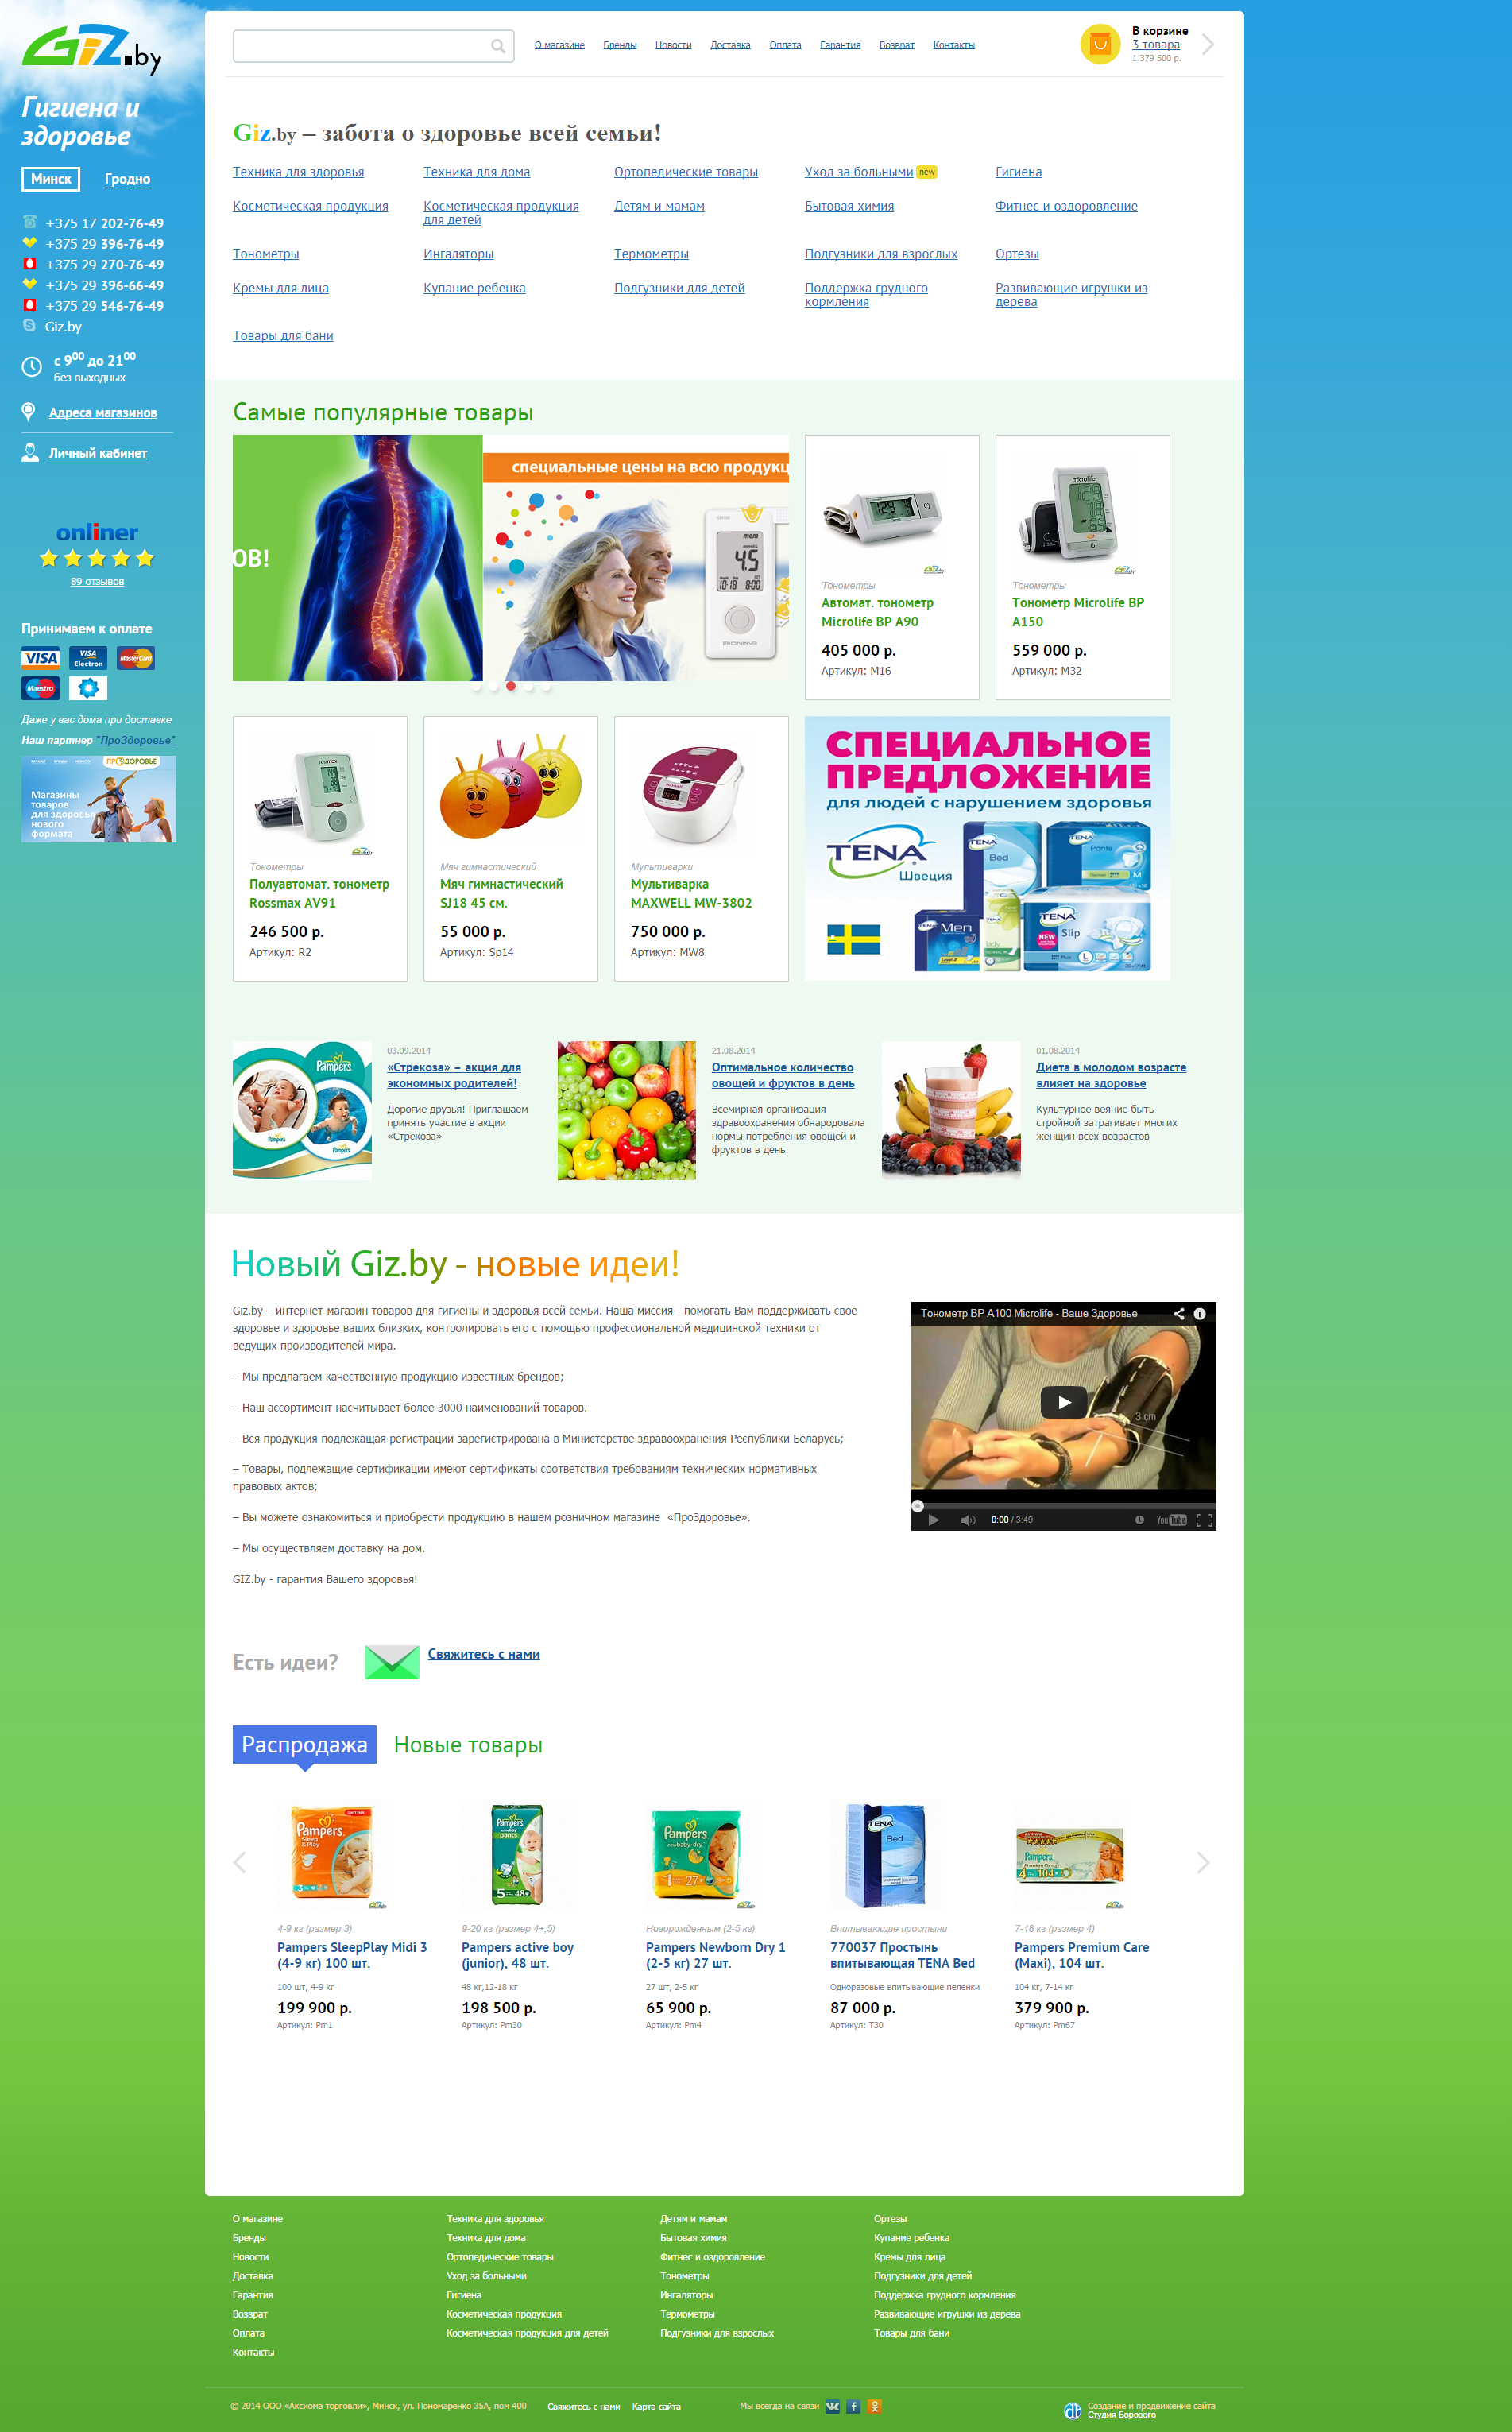 giz.by – интернет-магазин товаров для гигиены и здоровья